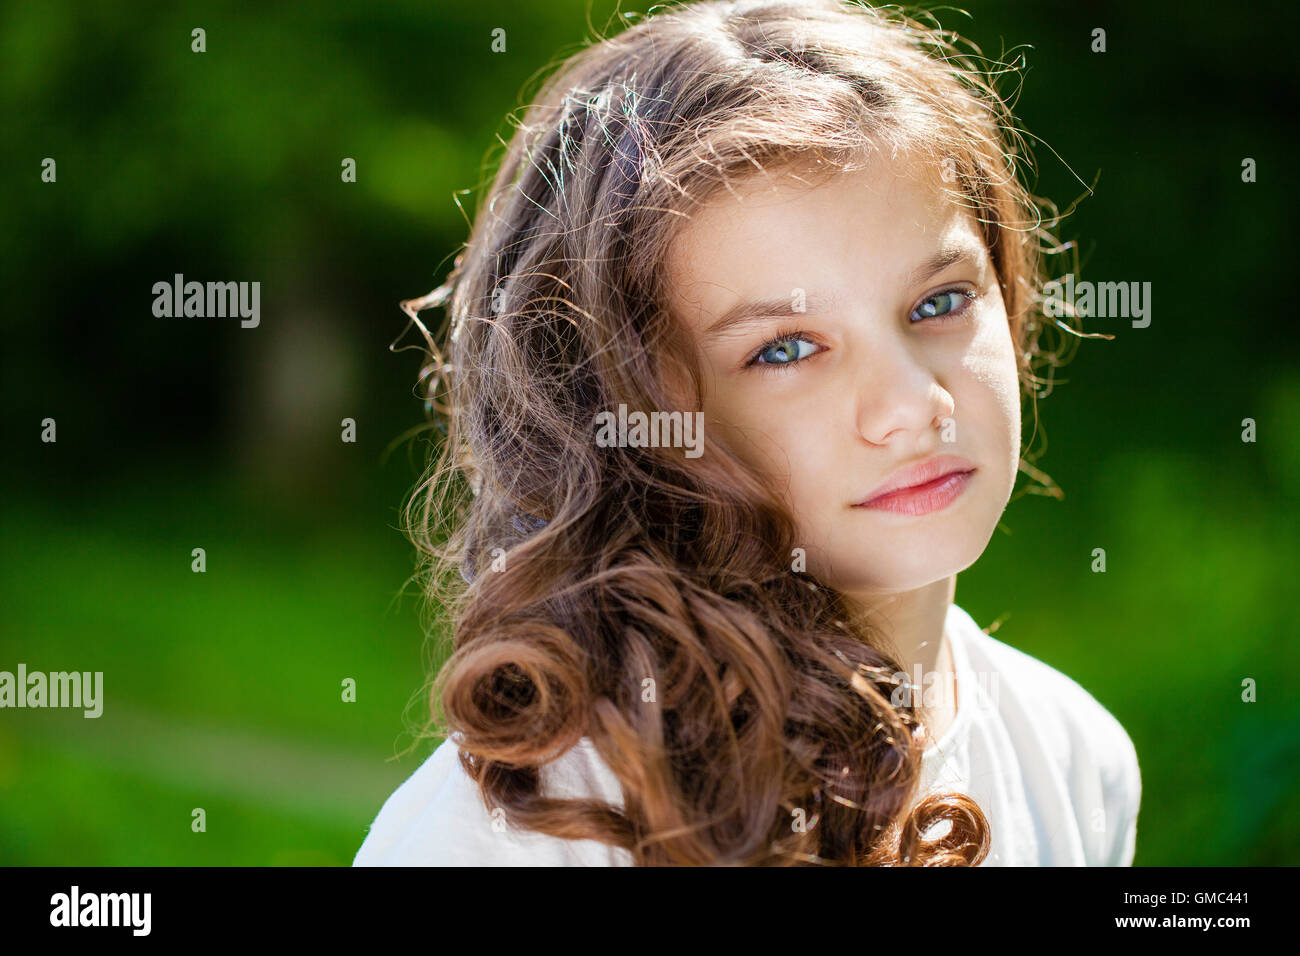 Retrato de una joven y bella niña en el fondo del parque de verano Foto de stock